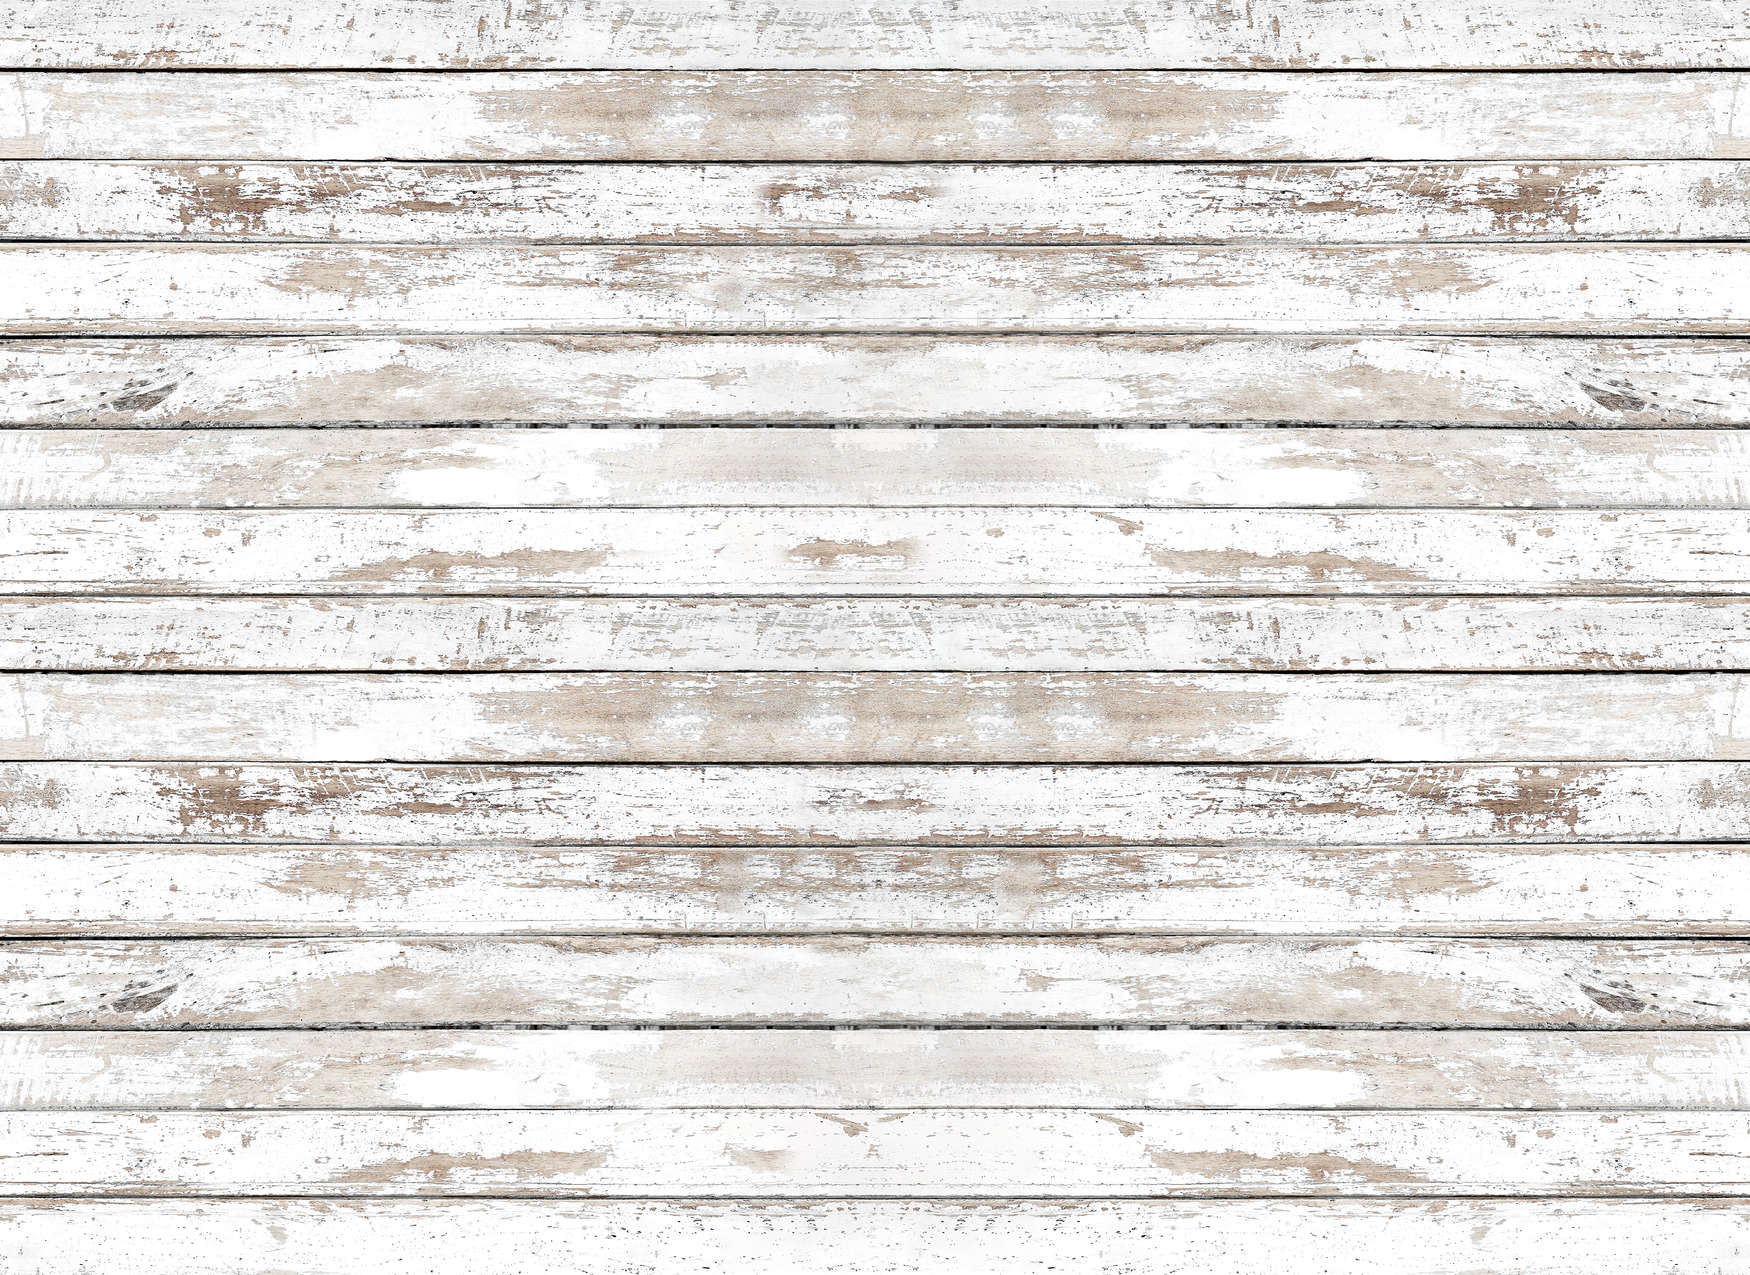             Mural de madera con tablas horizontales natural - Blanco, Beige
        